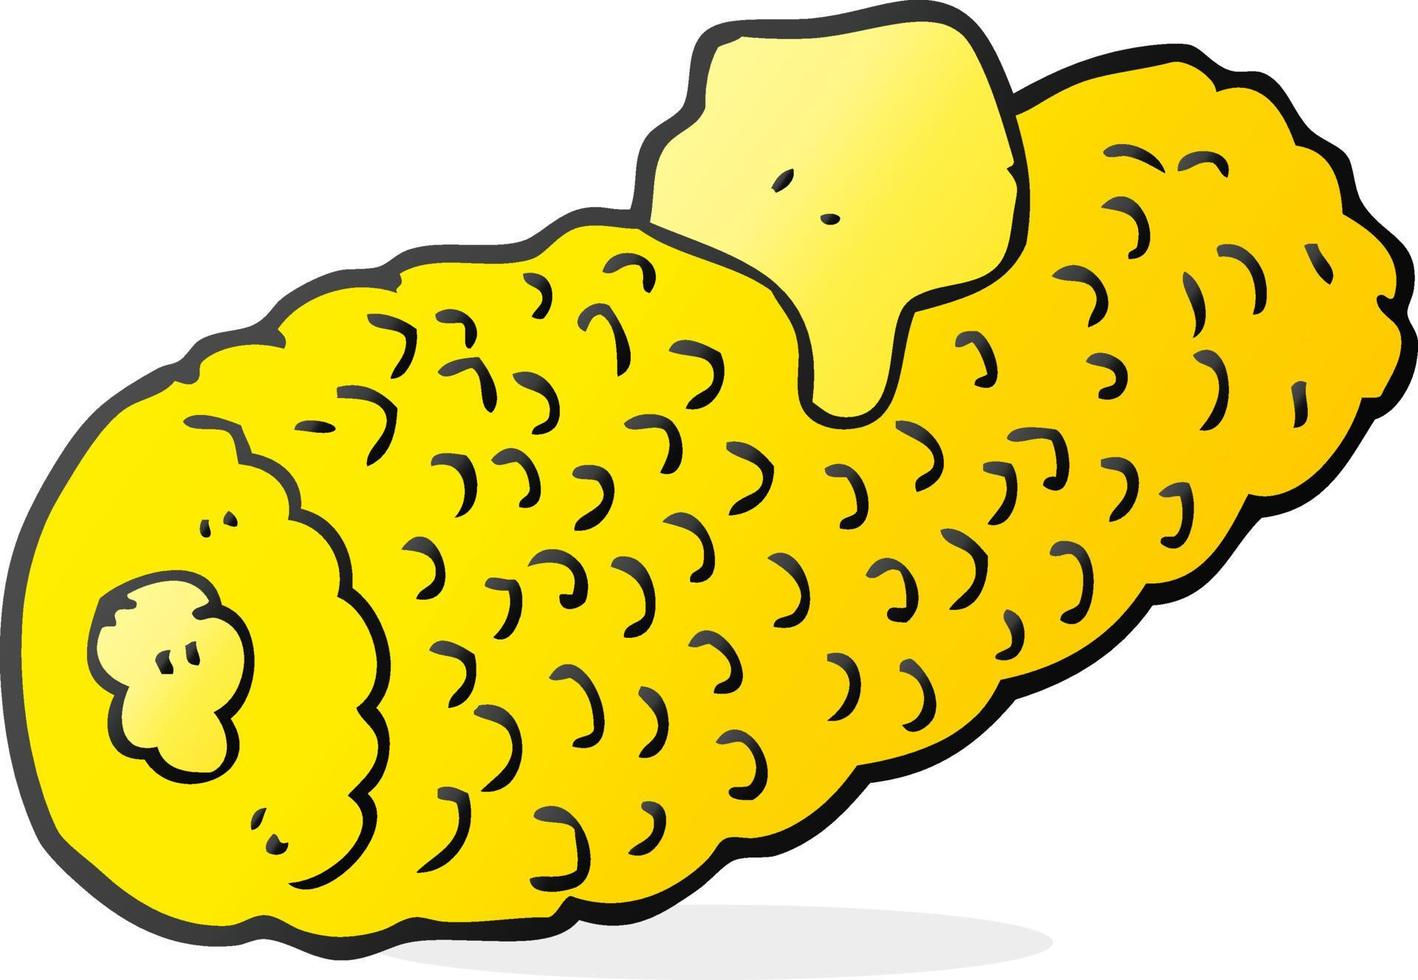 uit de vrije hand getrokken tekenfilm maïs Aan maïskolf met boter vector